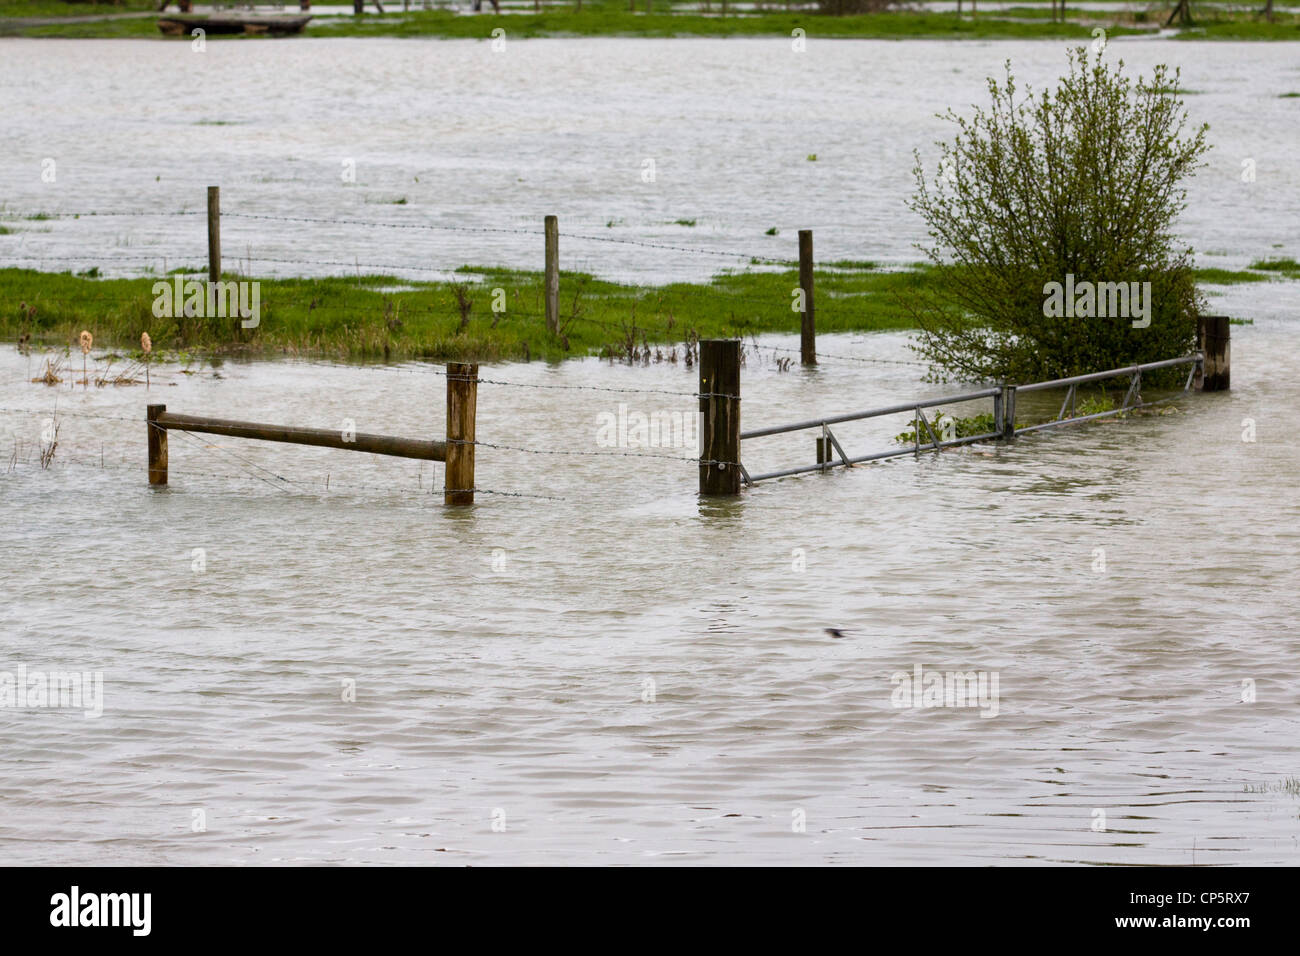 Les eaux de crue à Kings Sutton dans l'Oxfordshire / Northamptonshire Angleterre sur la rivière Cherwell Banque D'Images